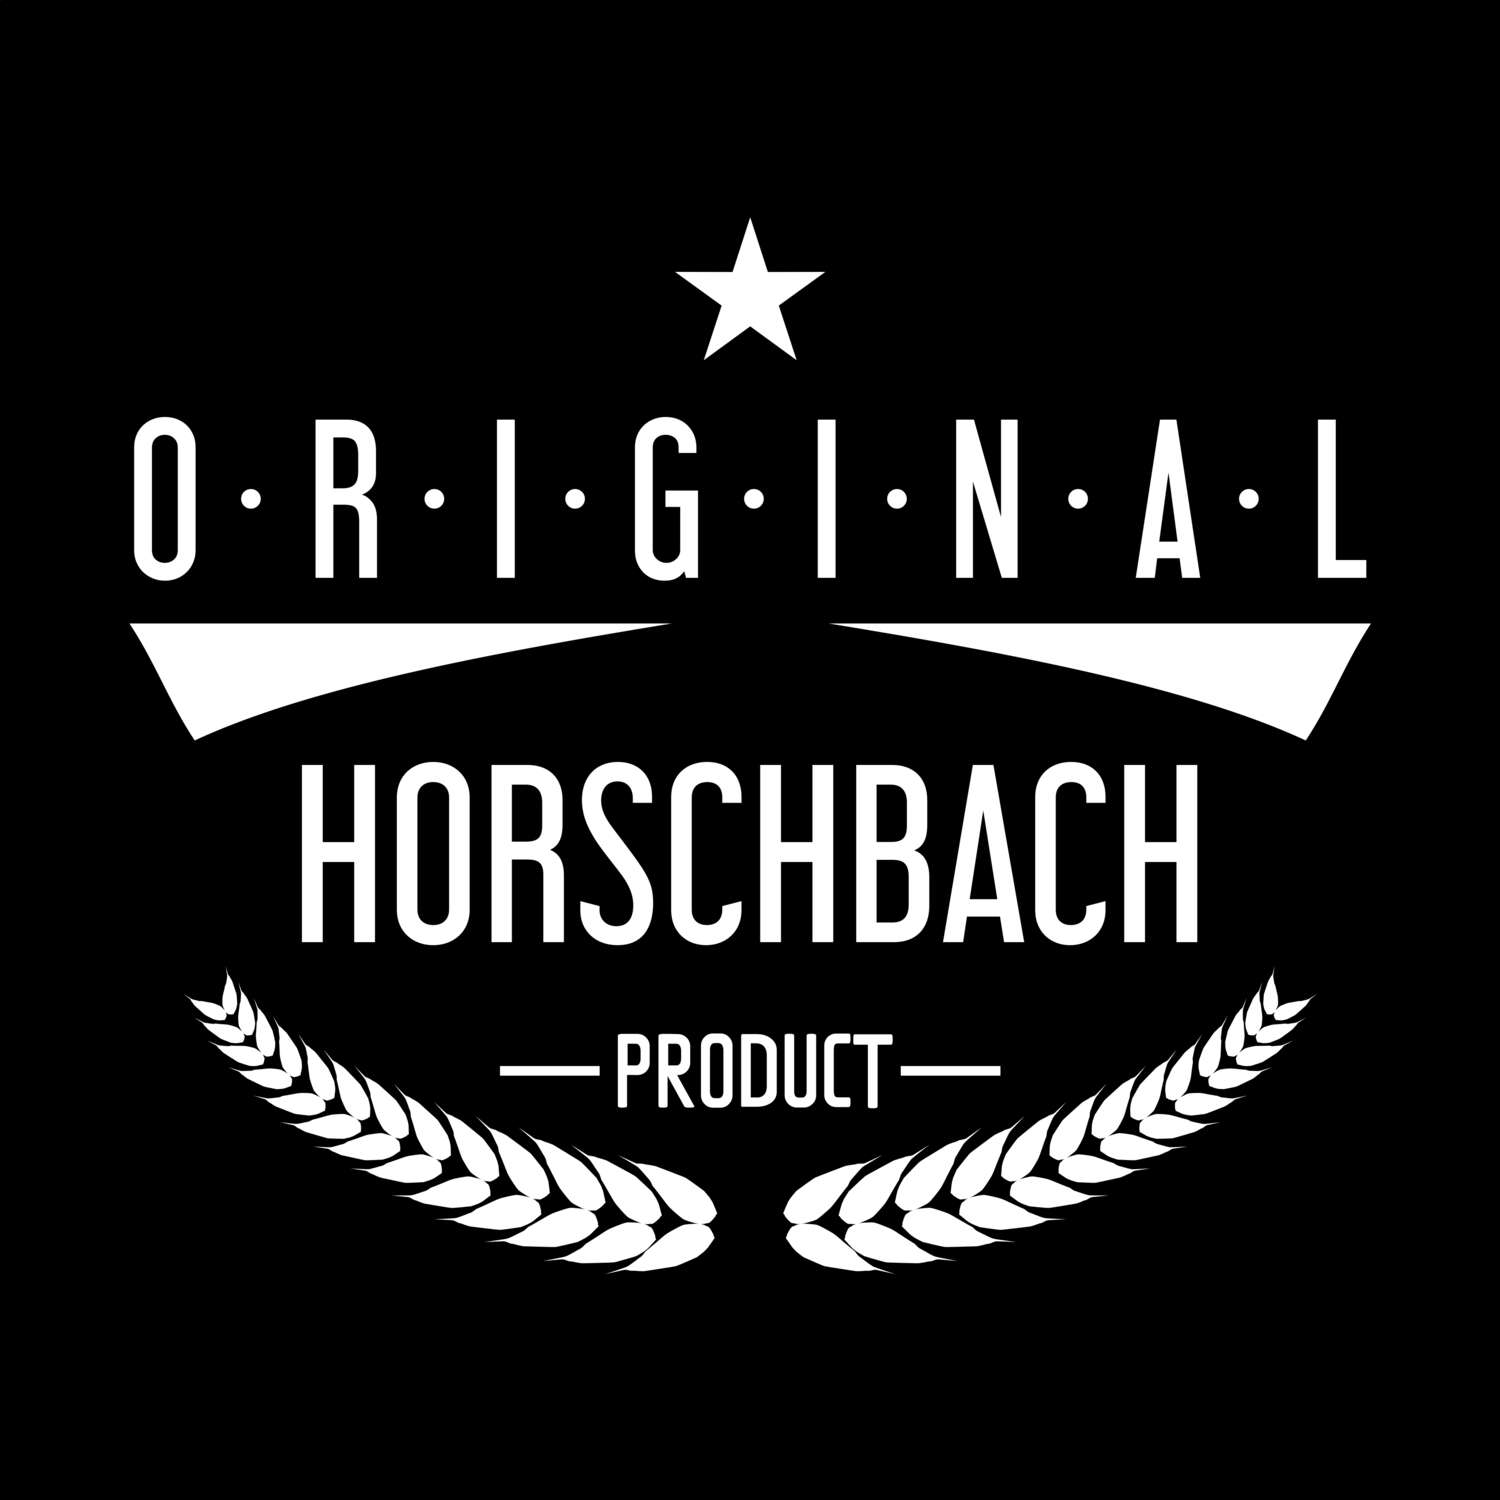 Horschbach T-Shirt »Original Product«